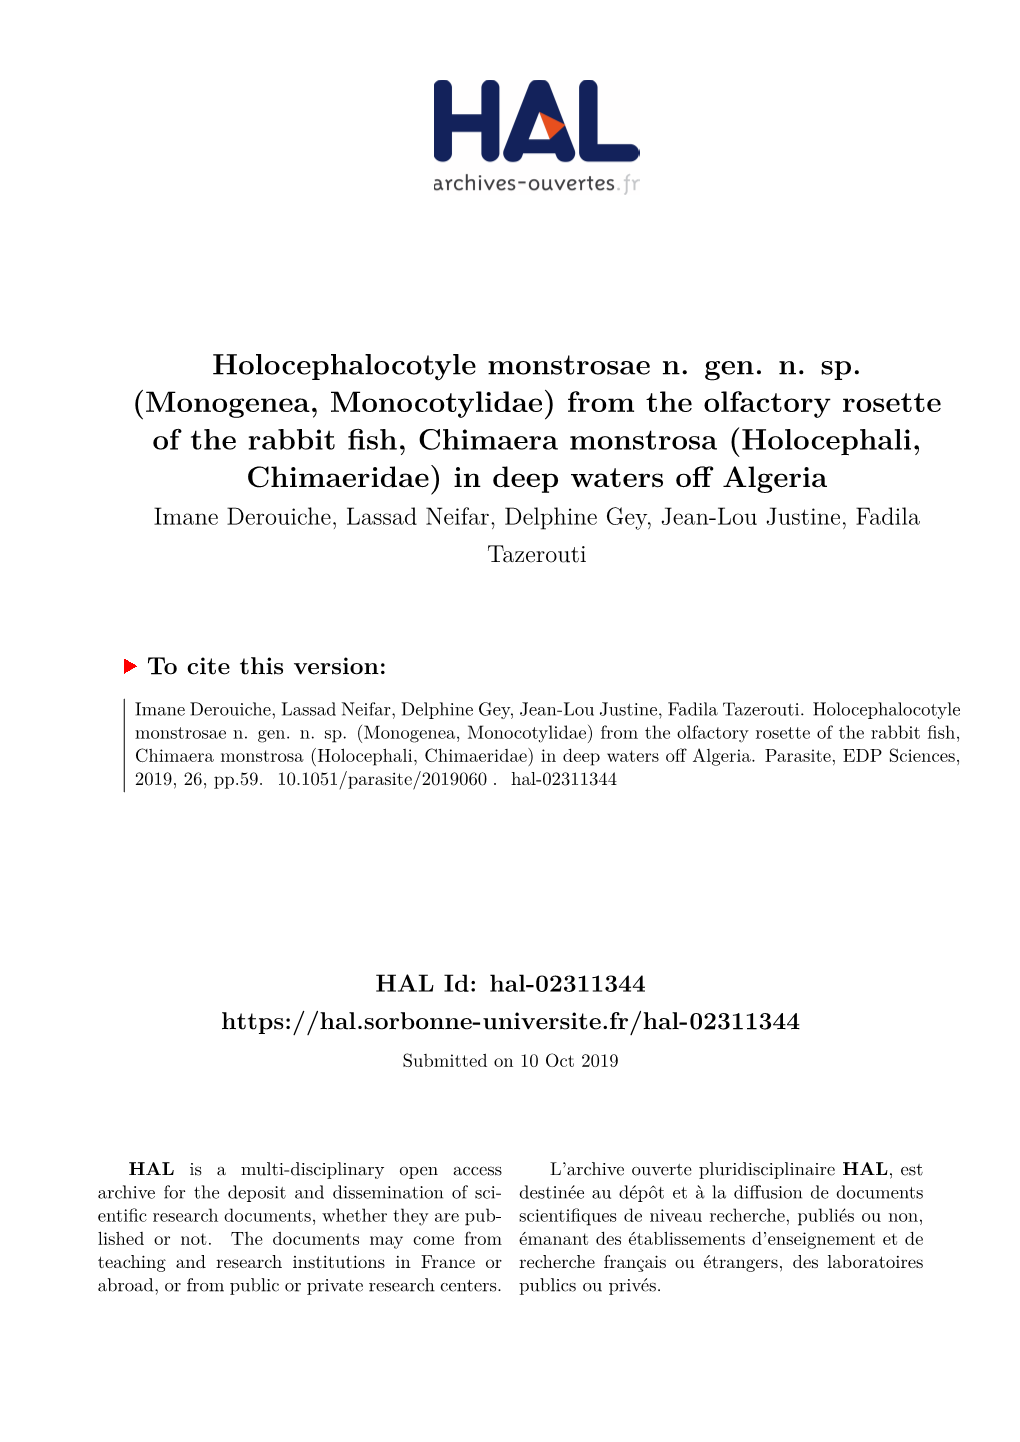 Monogenea, Monocotylidae